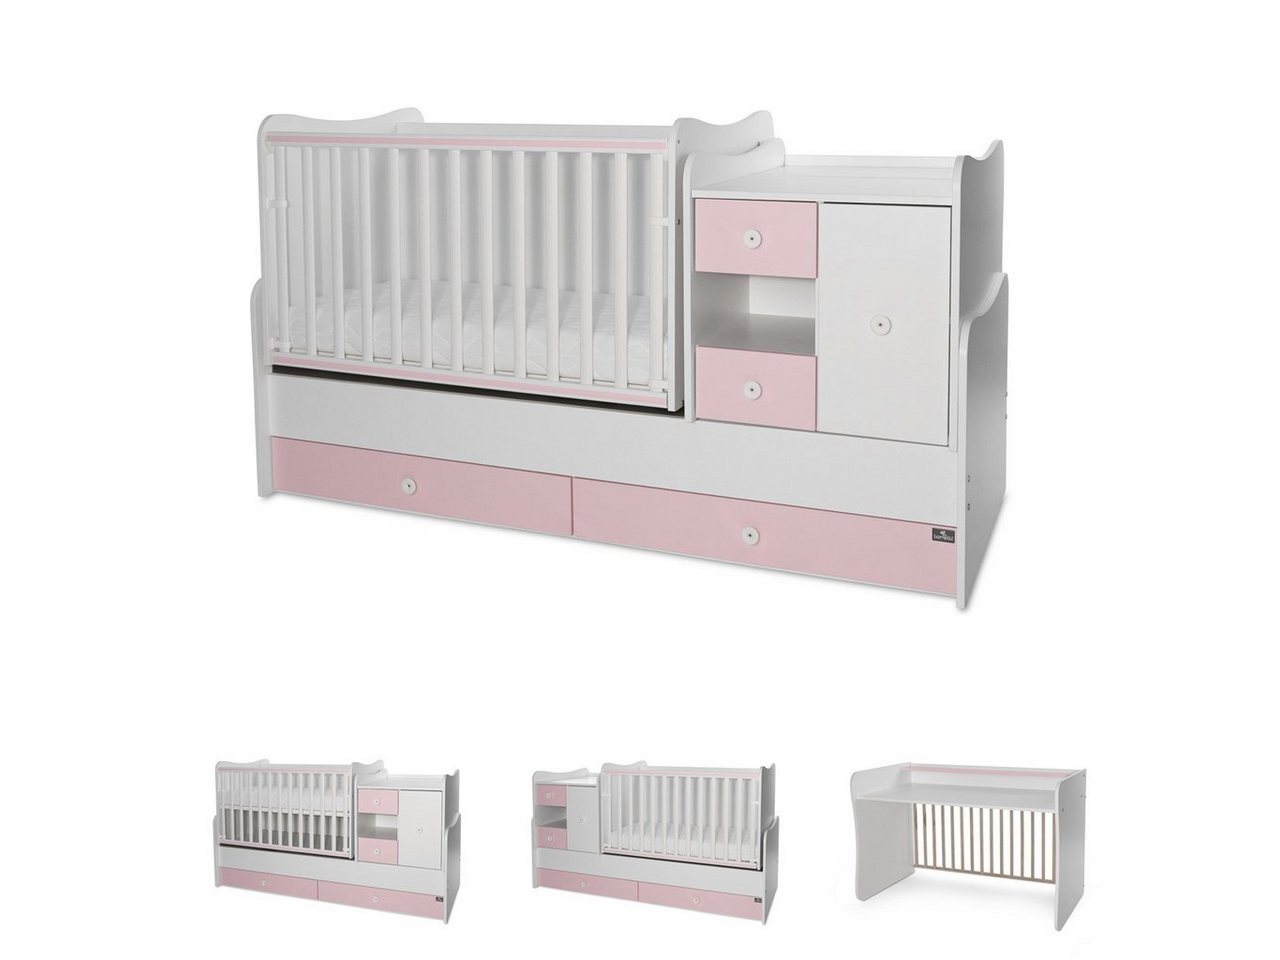 Lorelli Komplettbett Baby- und Kinderbett Mini Max, 3 in 1, umbaubar, für 2 Kinder gleichzeitig von Lorelli